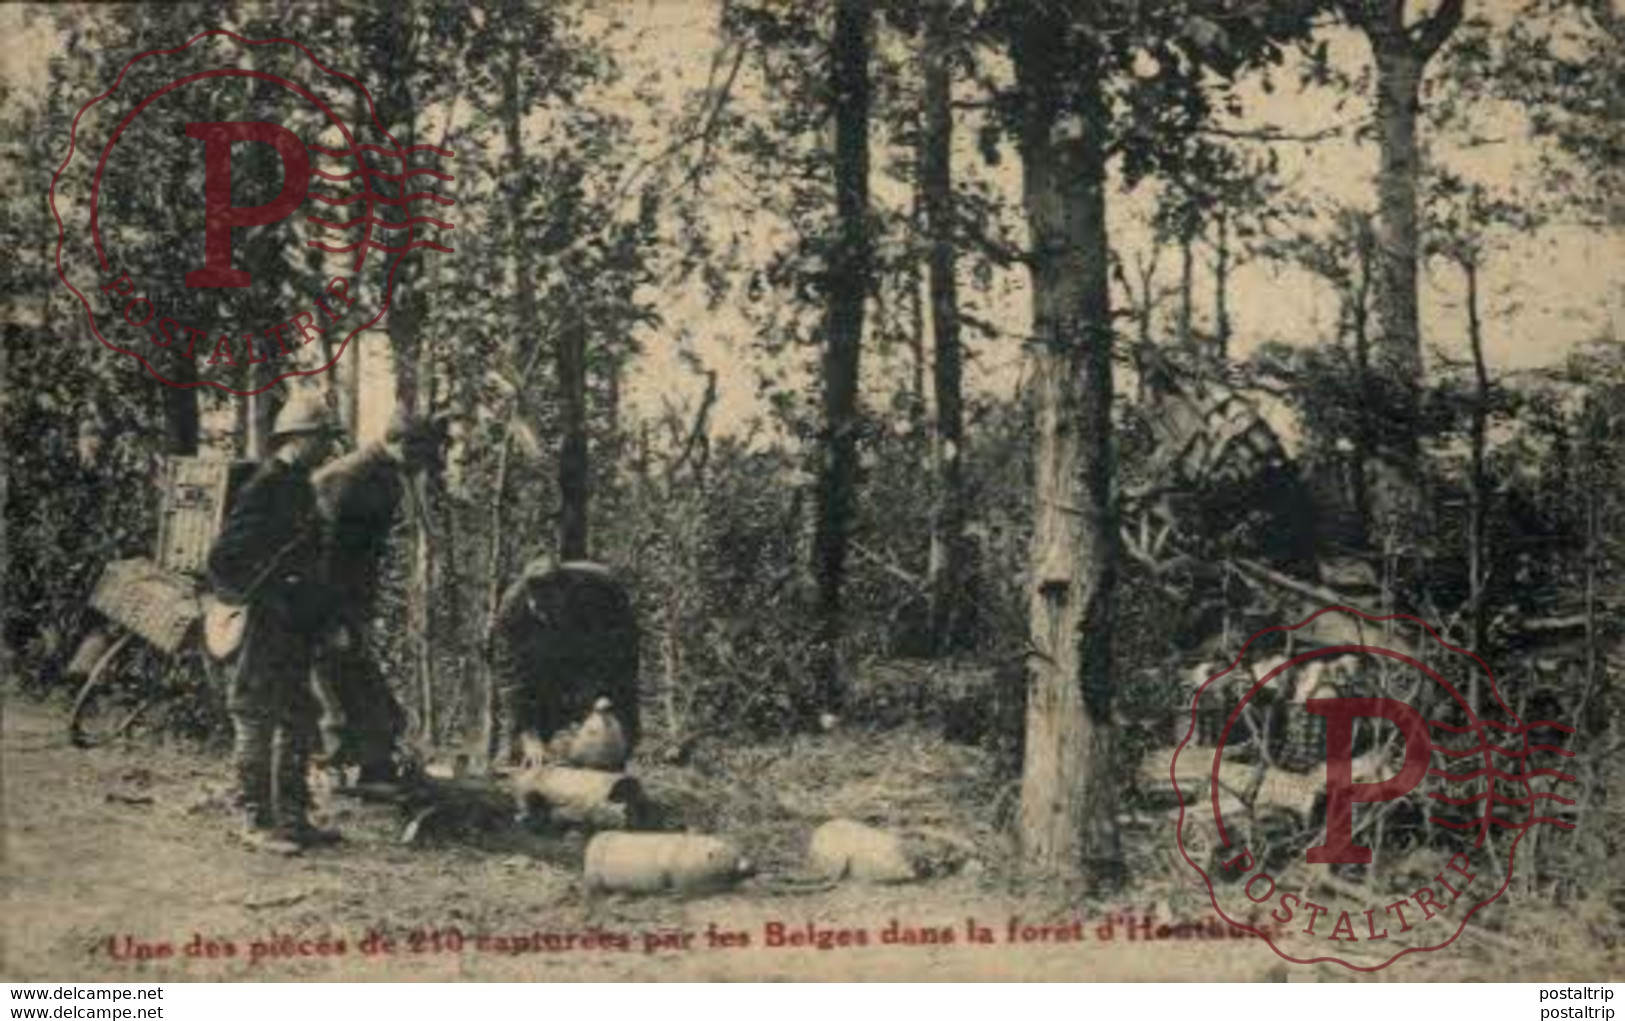 Une Des Pièces De 210 Capturées Par Le Belges Dans La Forêt D'Houthulst GERMAN  WWI WWICOLLECTION - Houthulst